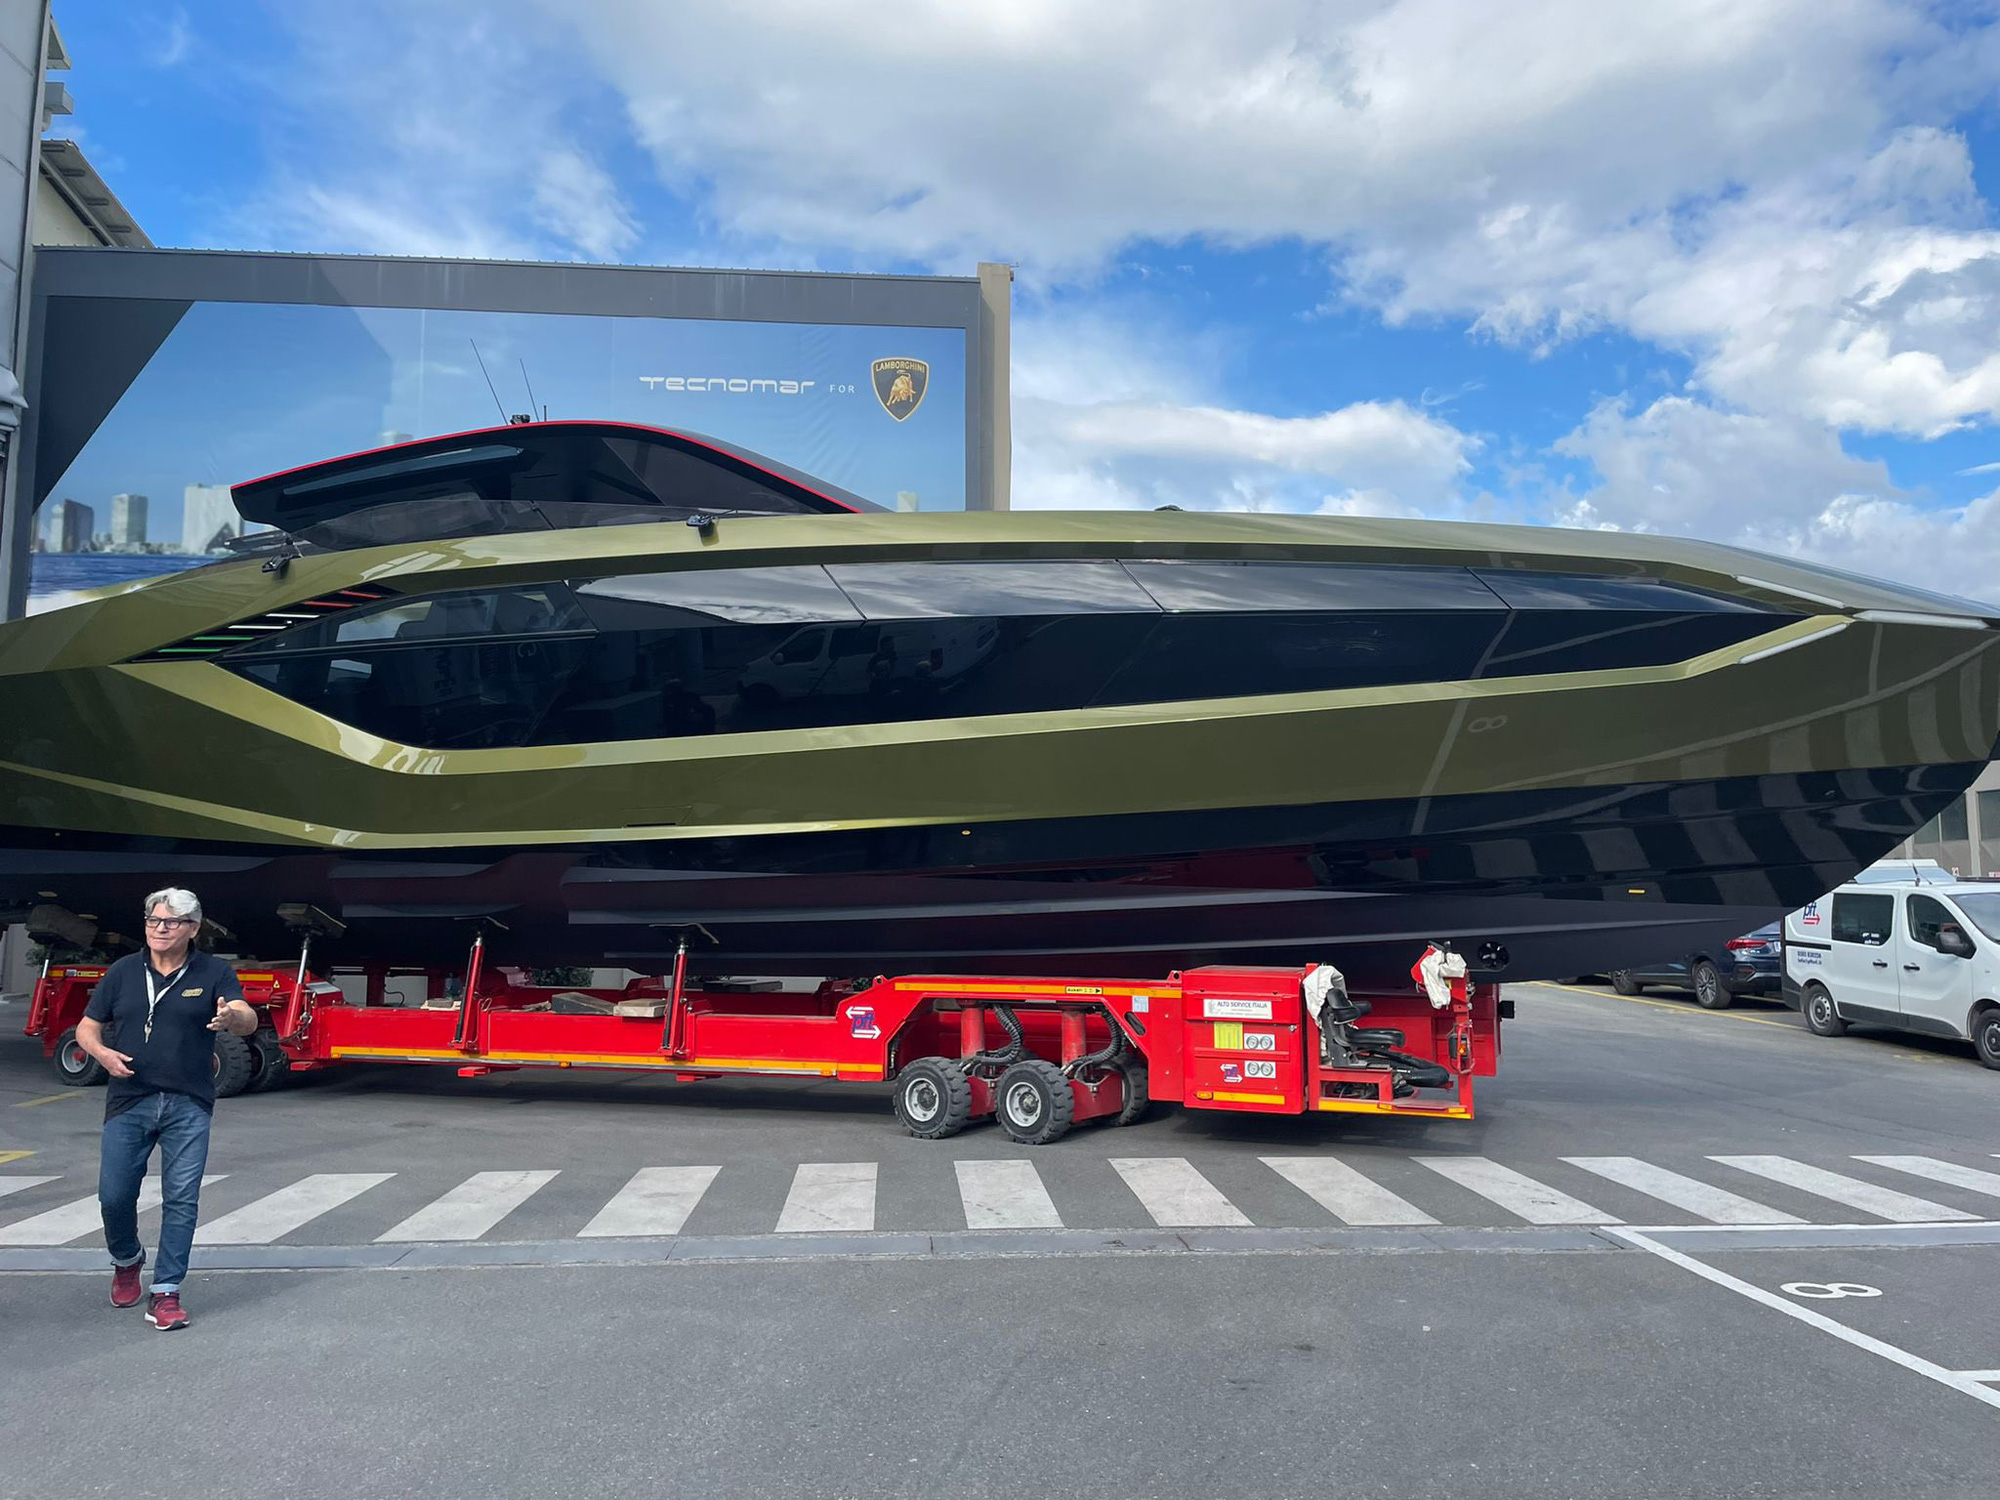 Sau thời gian dài chờ mòn mỏi, Conor McGregor sắp được nhận siêu du thuyền Lamborghini Tecnomar giá hơn 3,5 triệu USD - Ảnh 1.